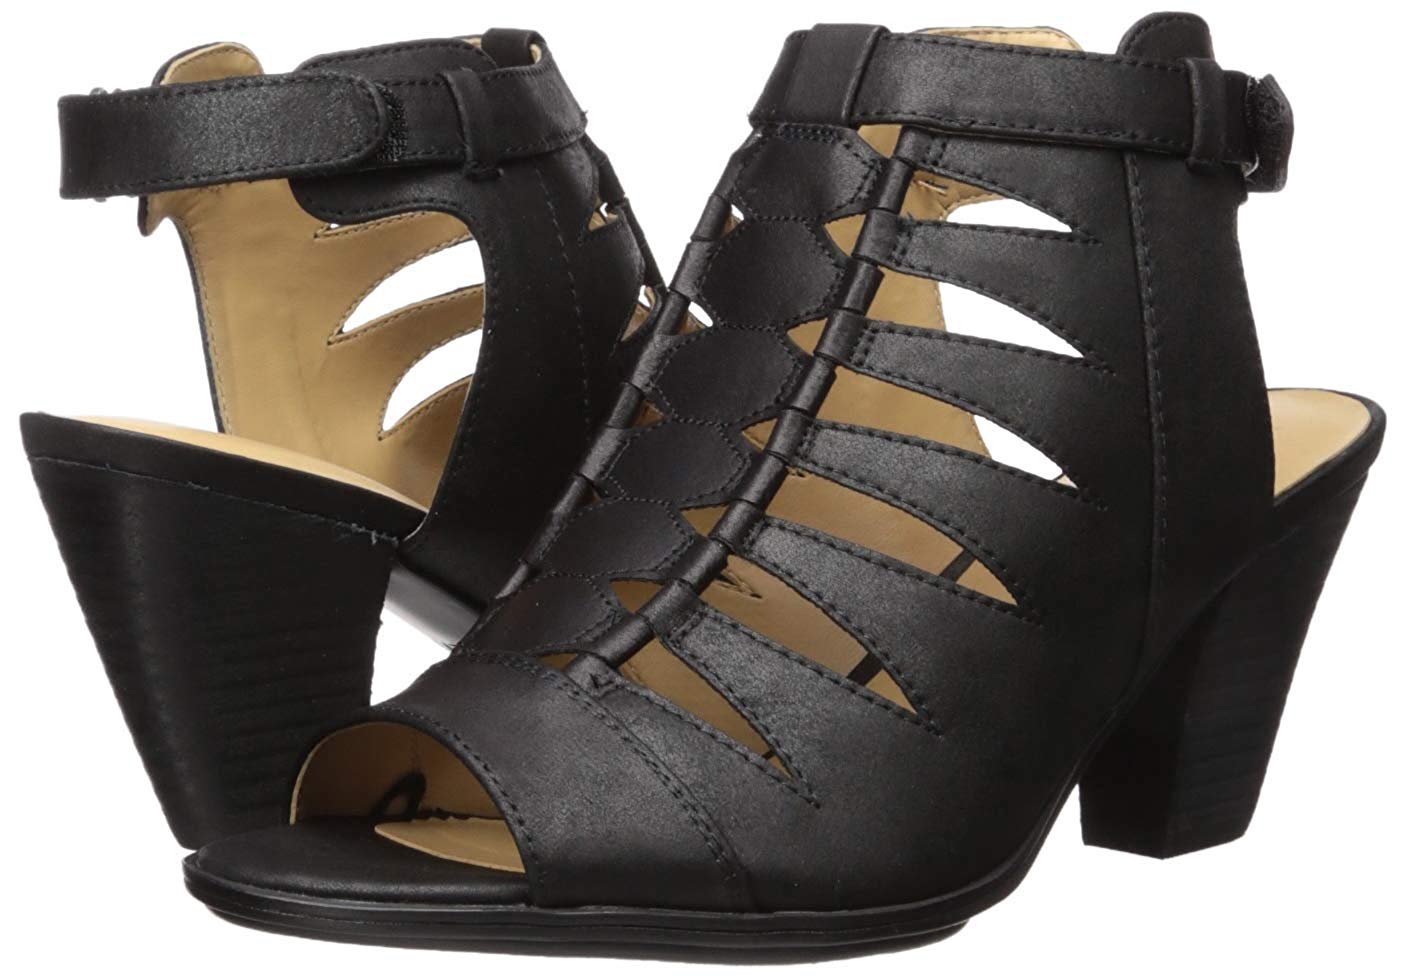 Naturalizer Womens Heeled Sandals in Black Color, Size 8.5 EOV | eBay